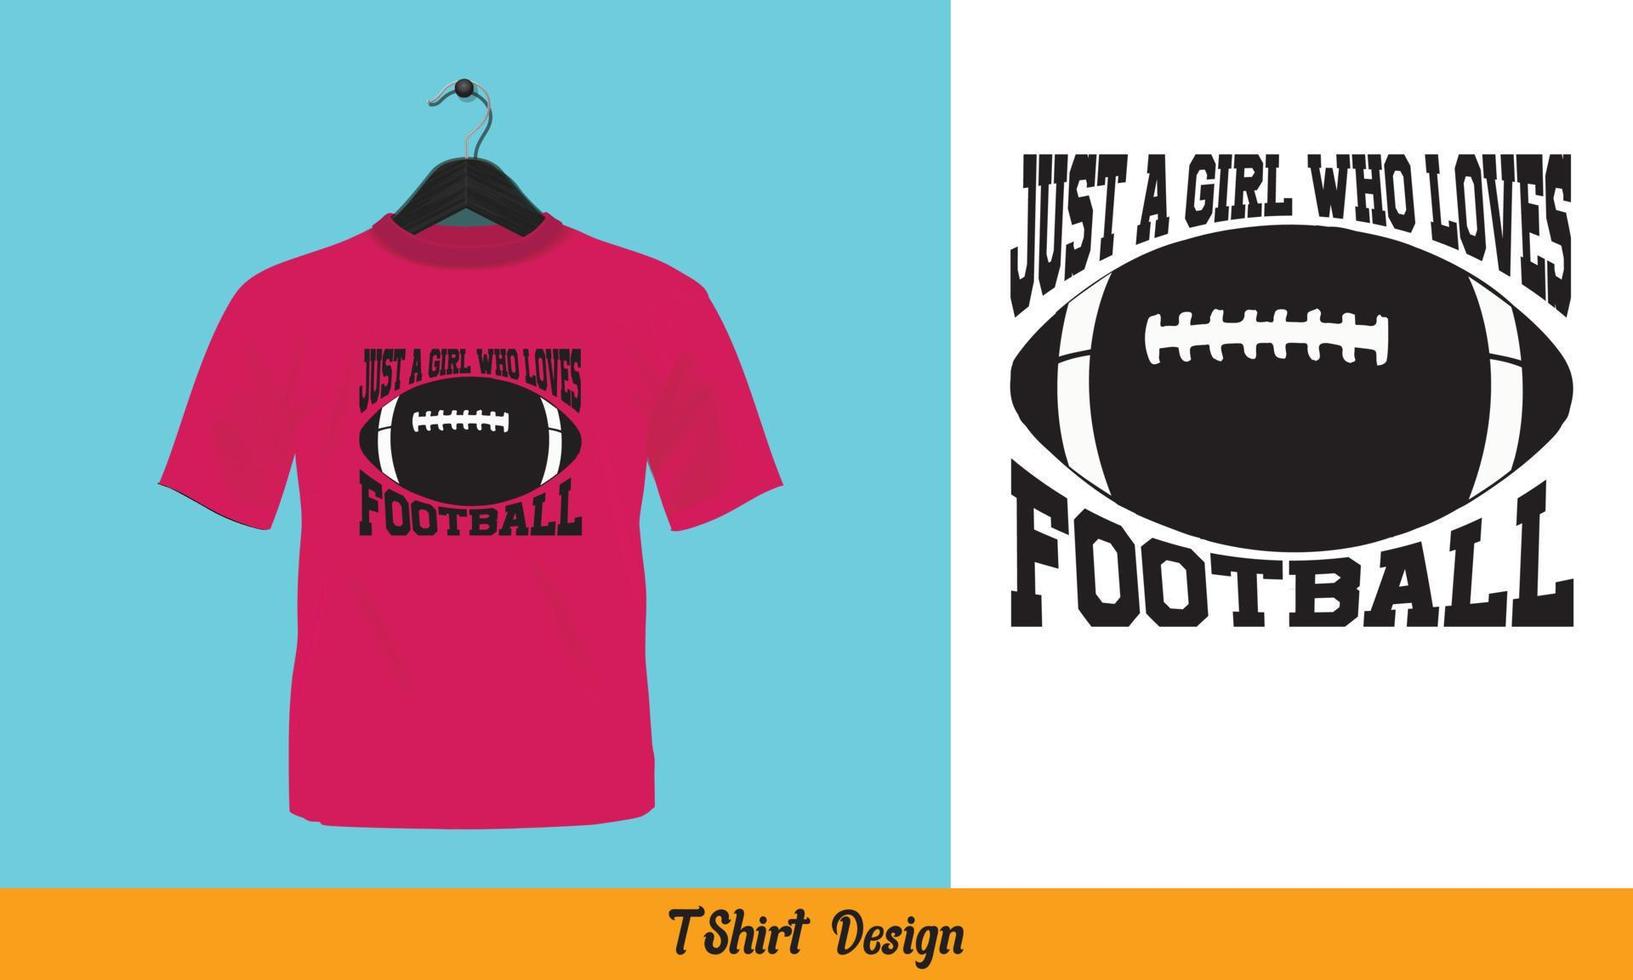 appena un' ragazza chi gli amori calcio - tipografia t camicia design. vettore